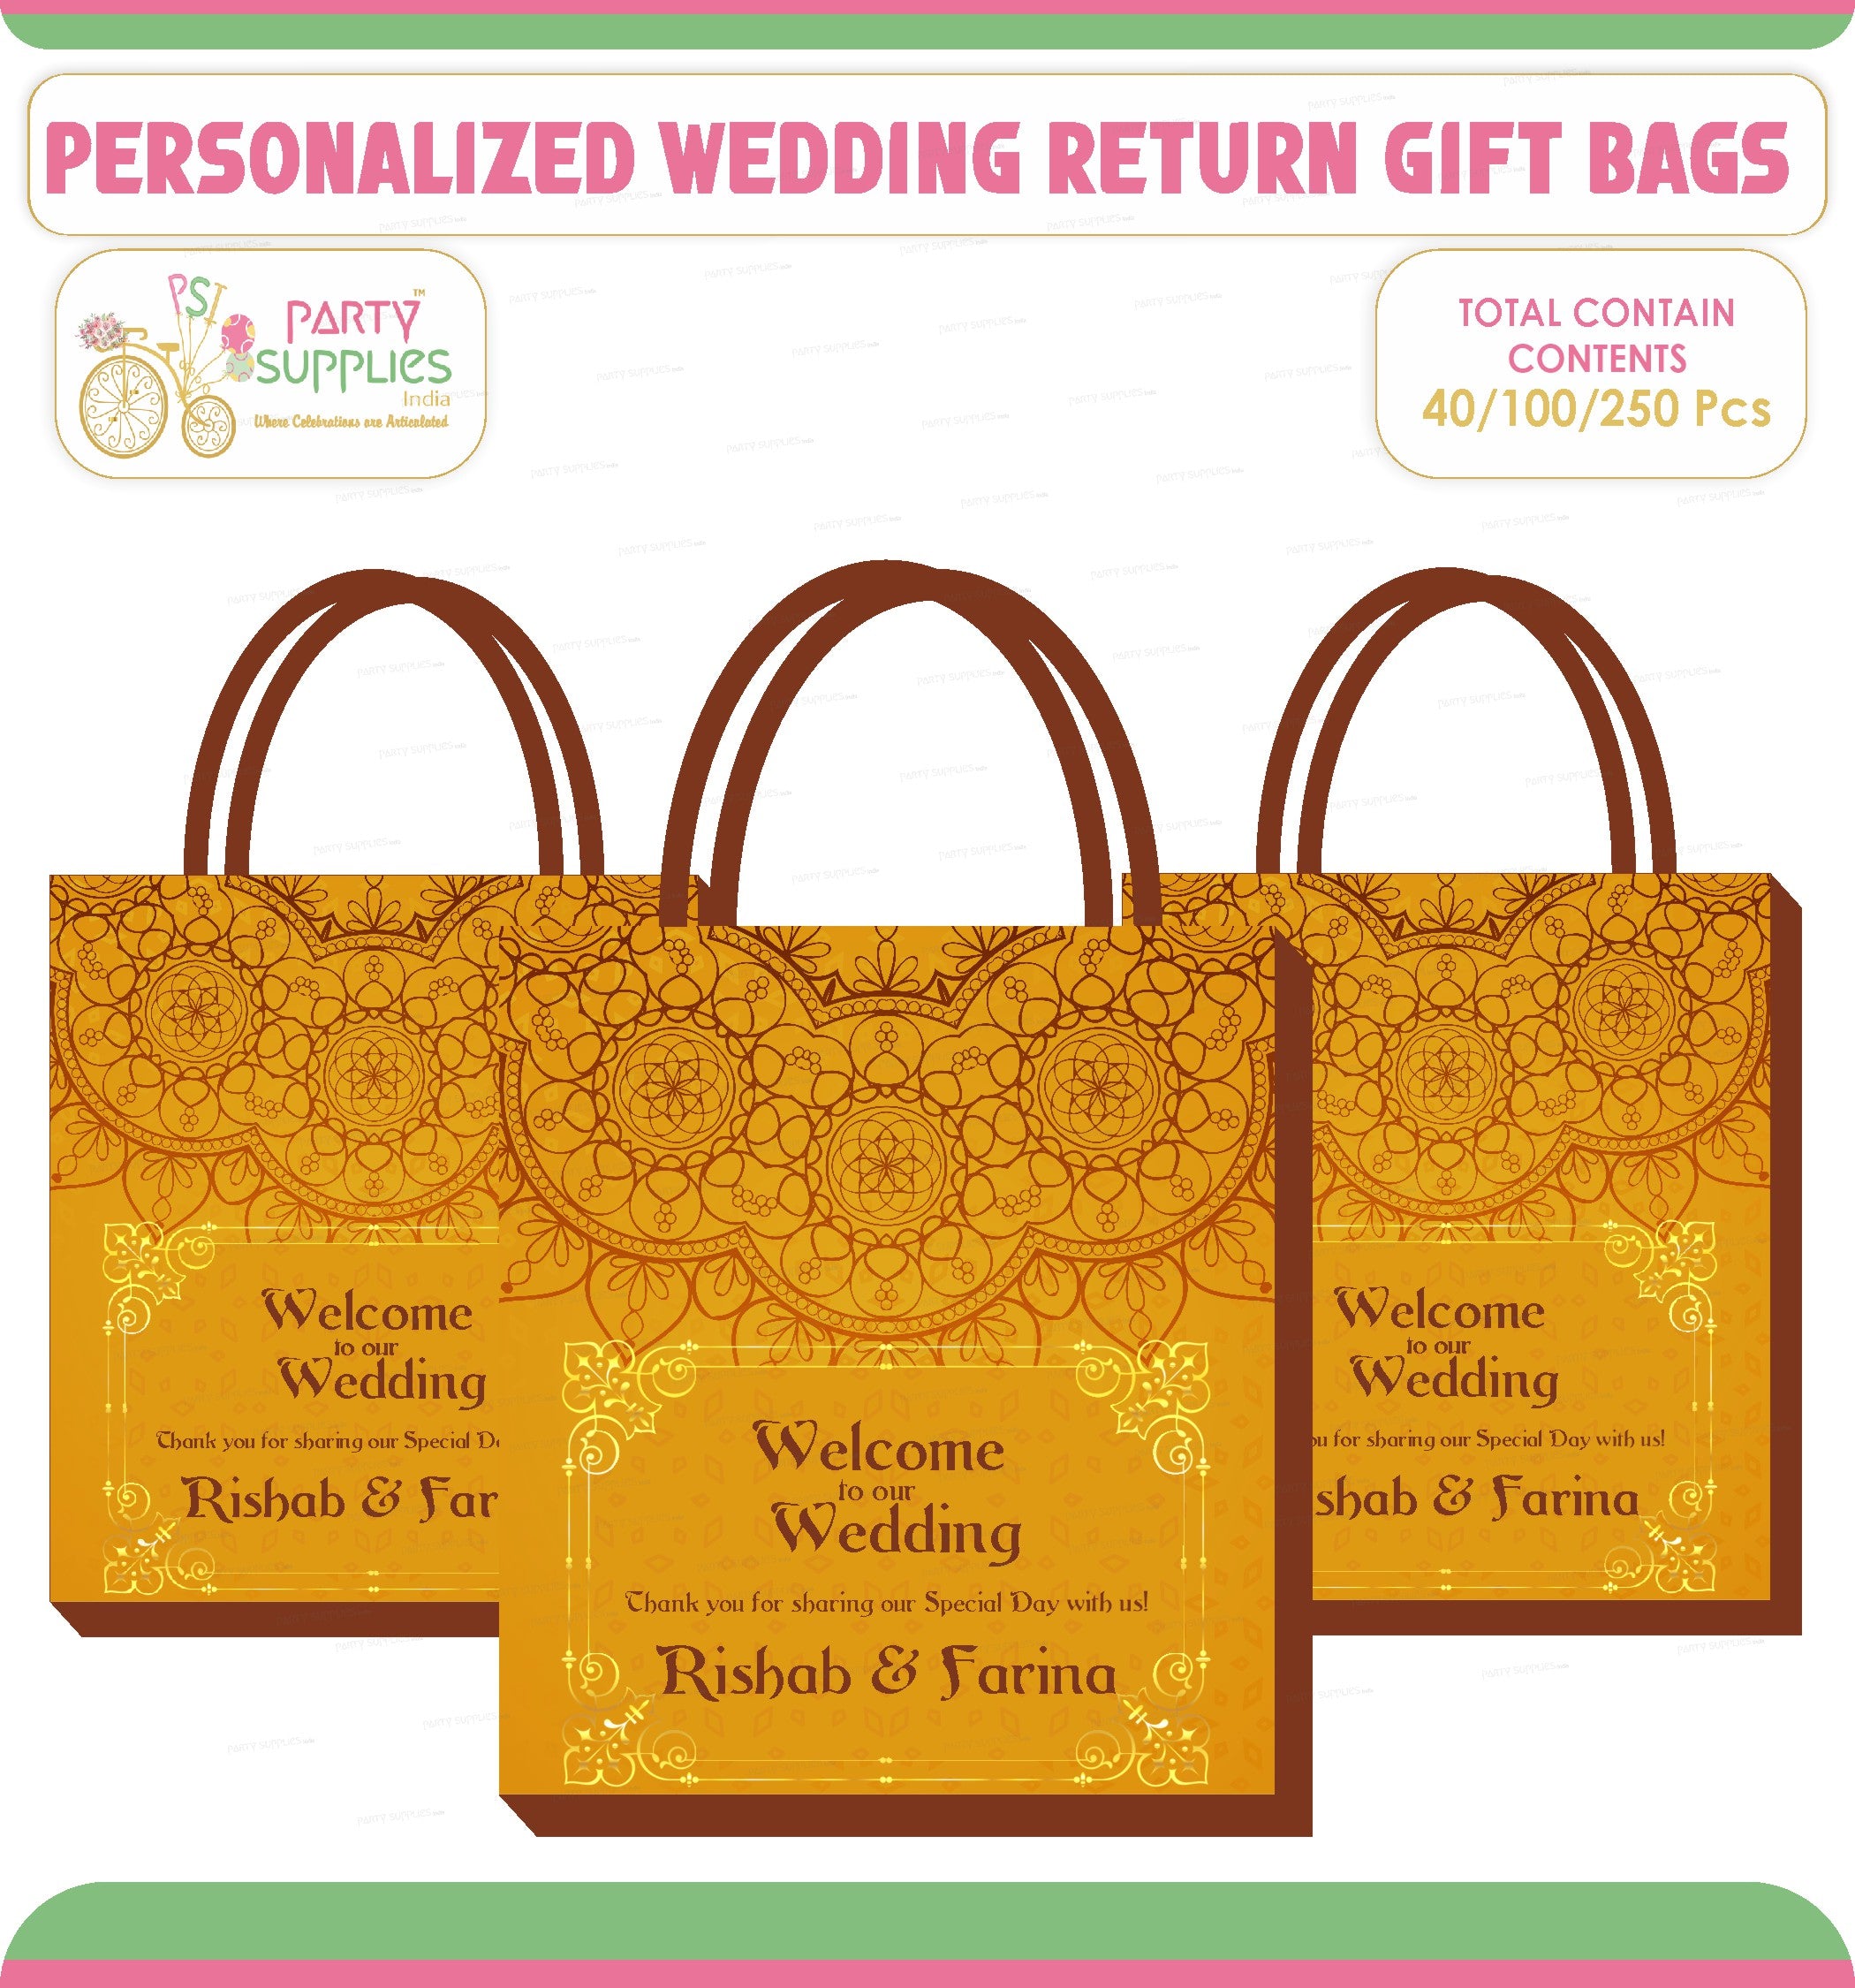 Aggregate more than 165 wedding return gifts chennai